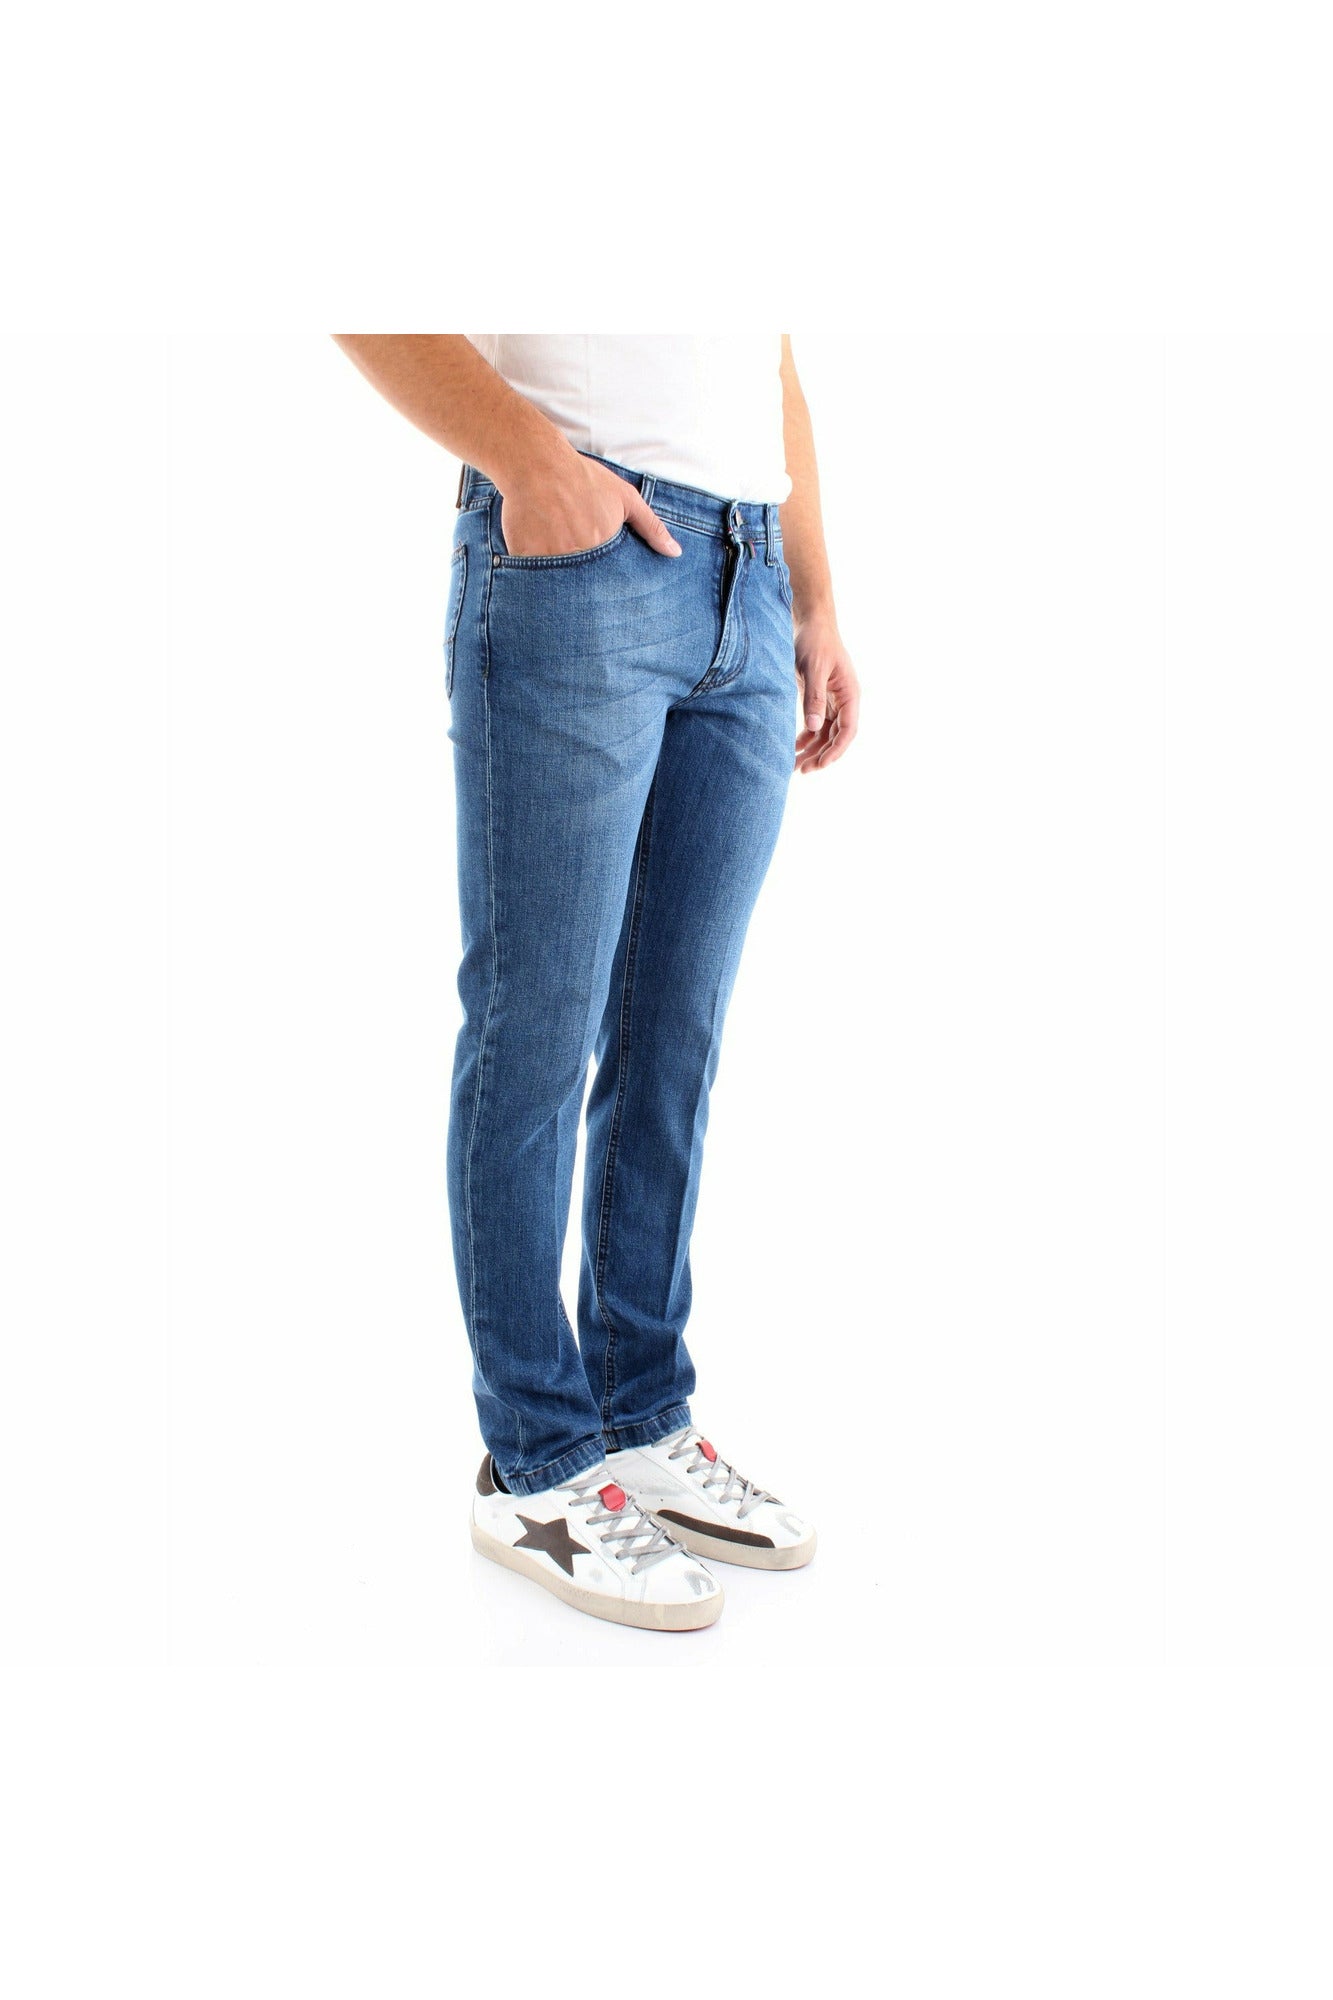 BSETTECENTO L702-2035AI21209 jeans cinque tasche slim fit